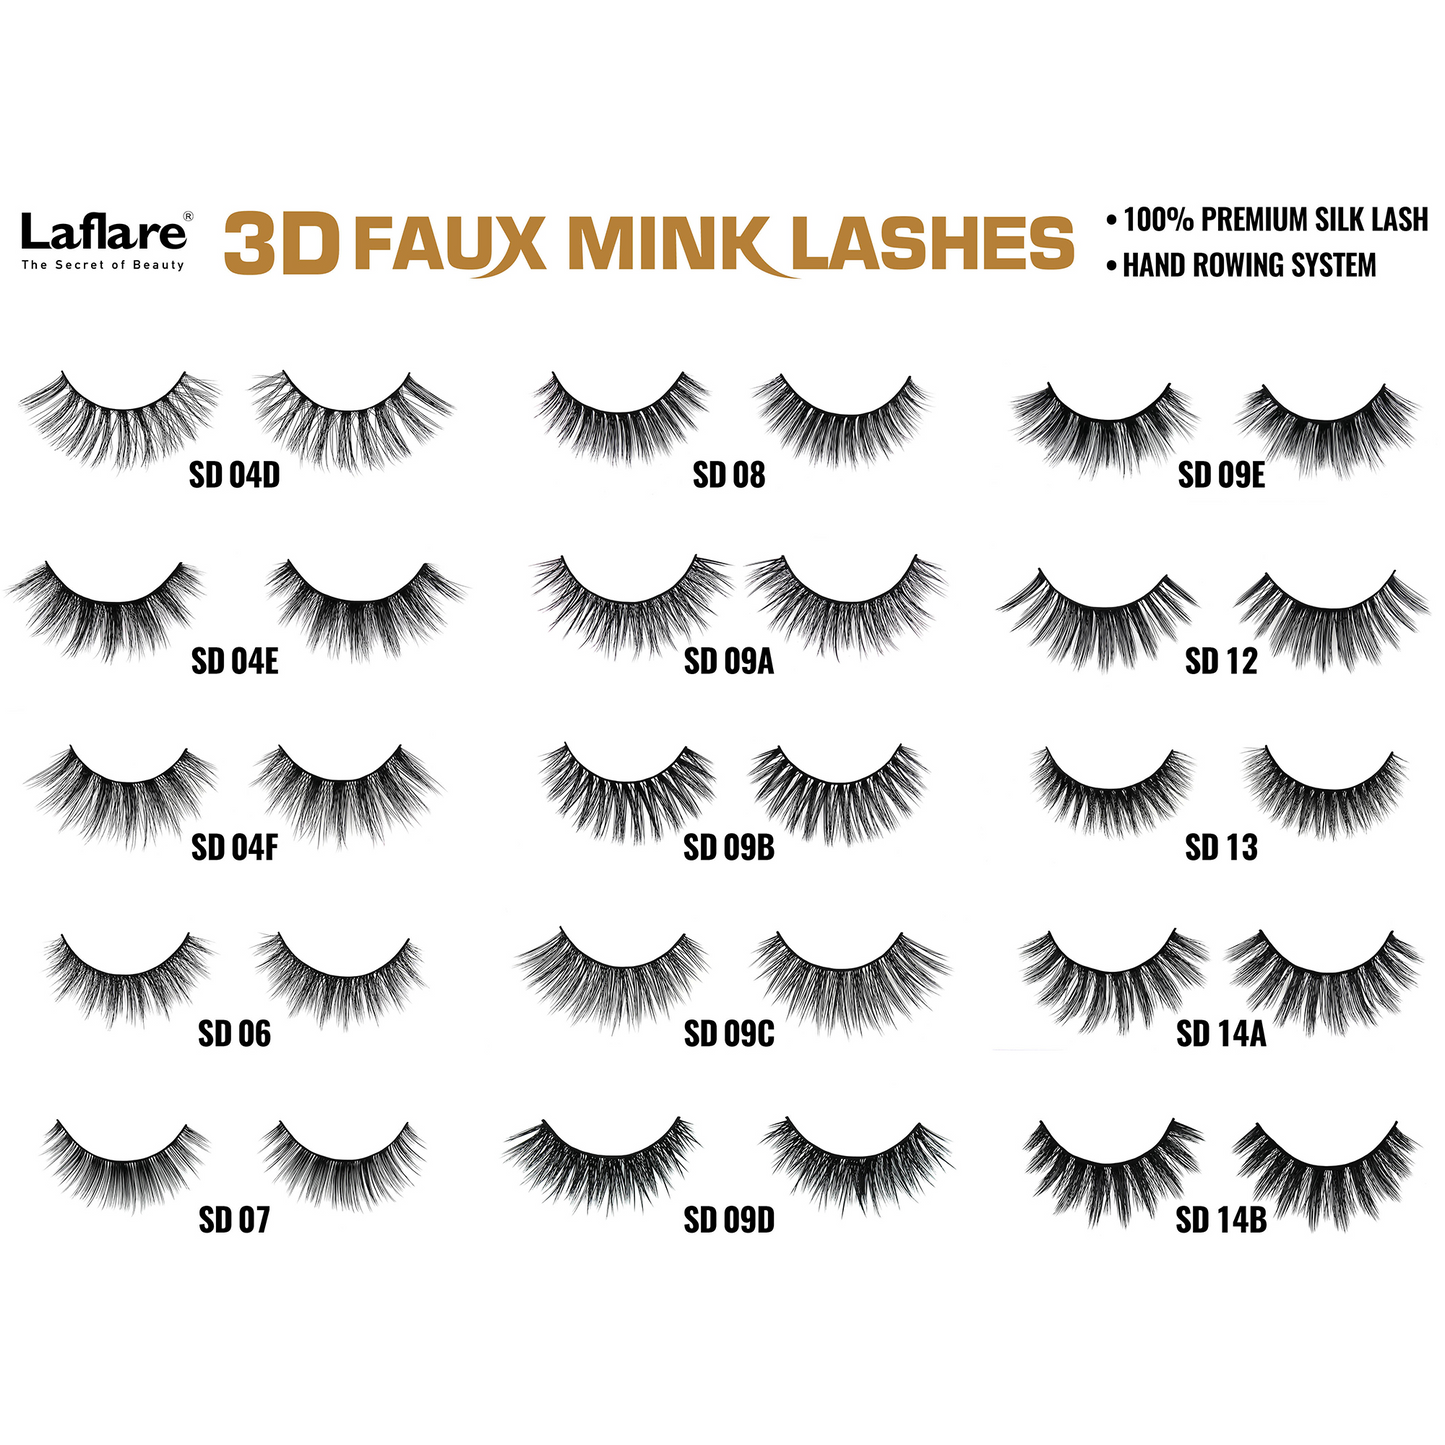 LAFLARE 3D FAUX MINK LASHES - SD21K